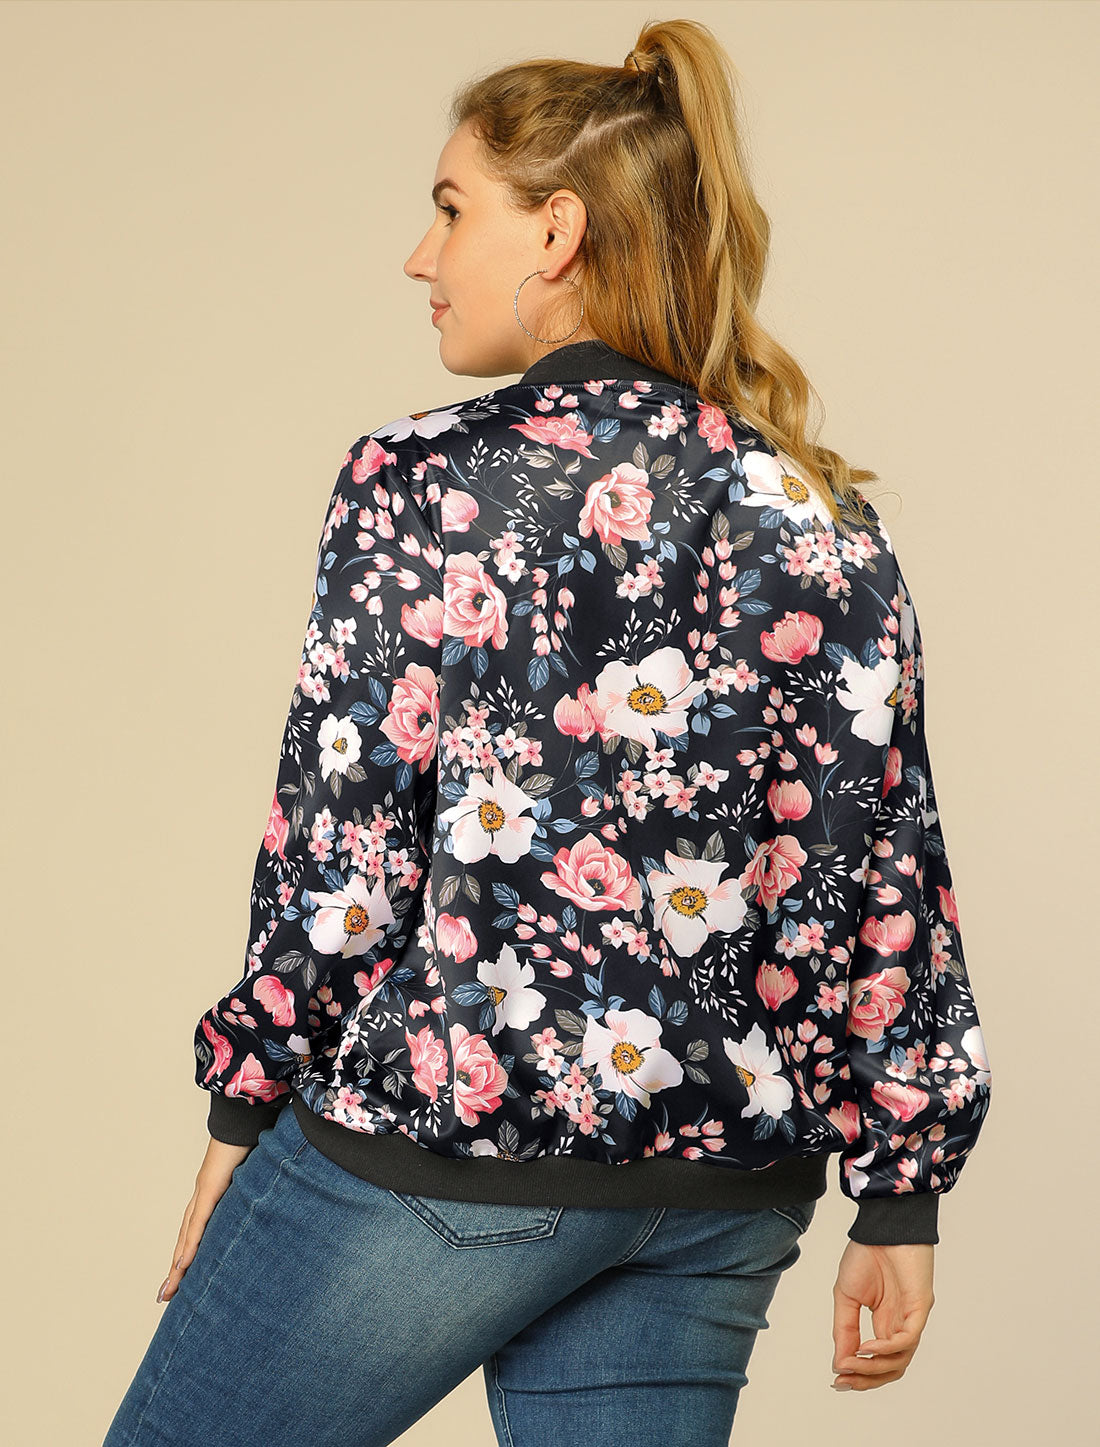 Bublédon Plus Size Zipper Jackets Long Sleeves Floral Bomber Jacket